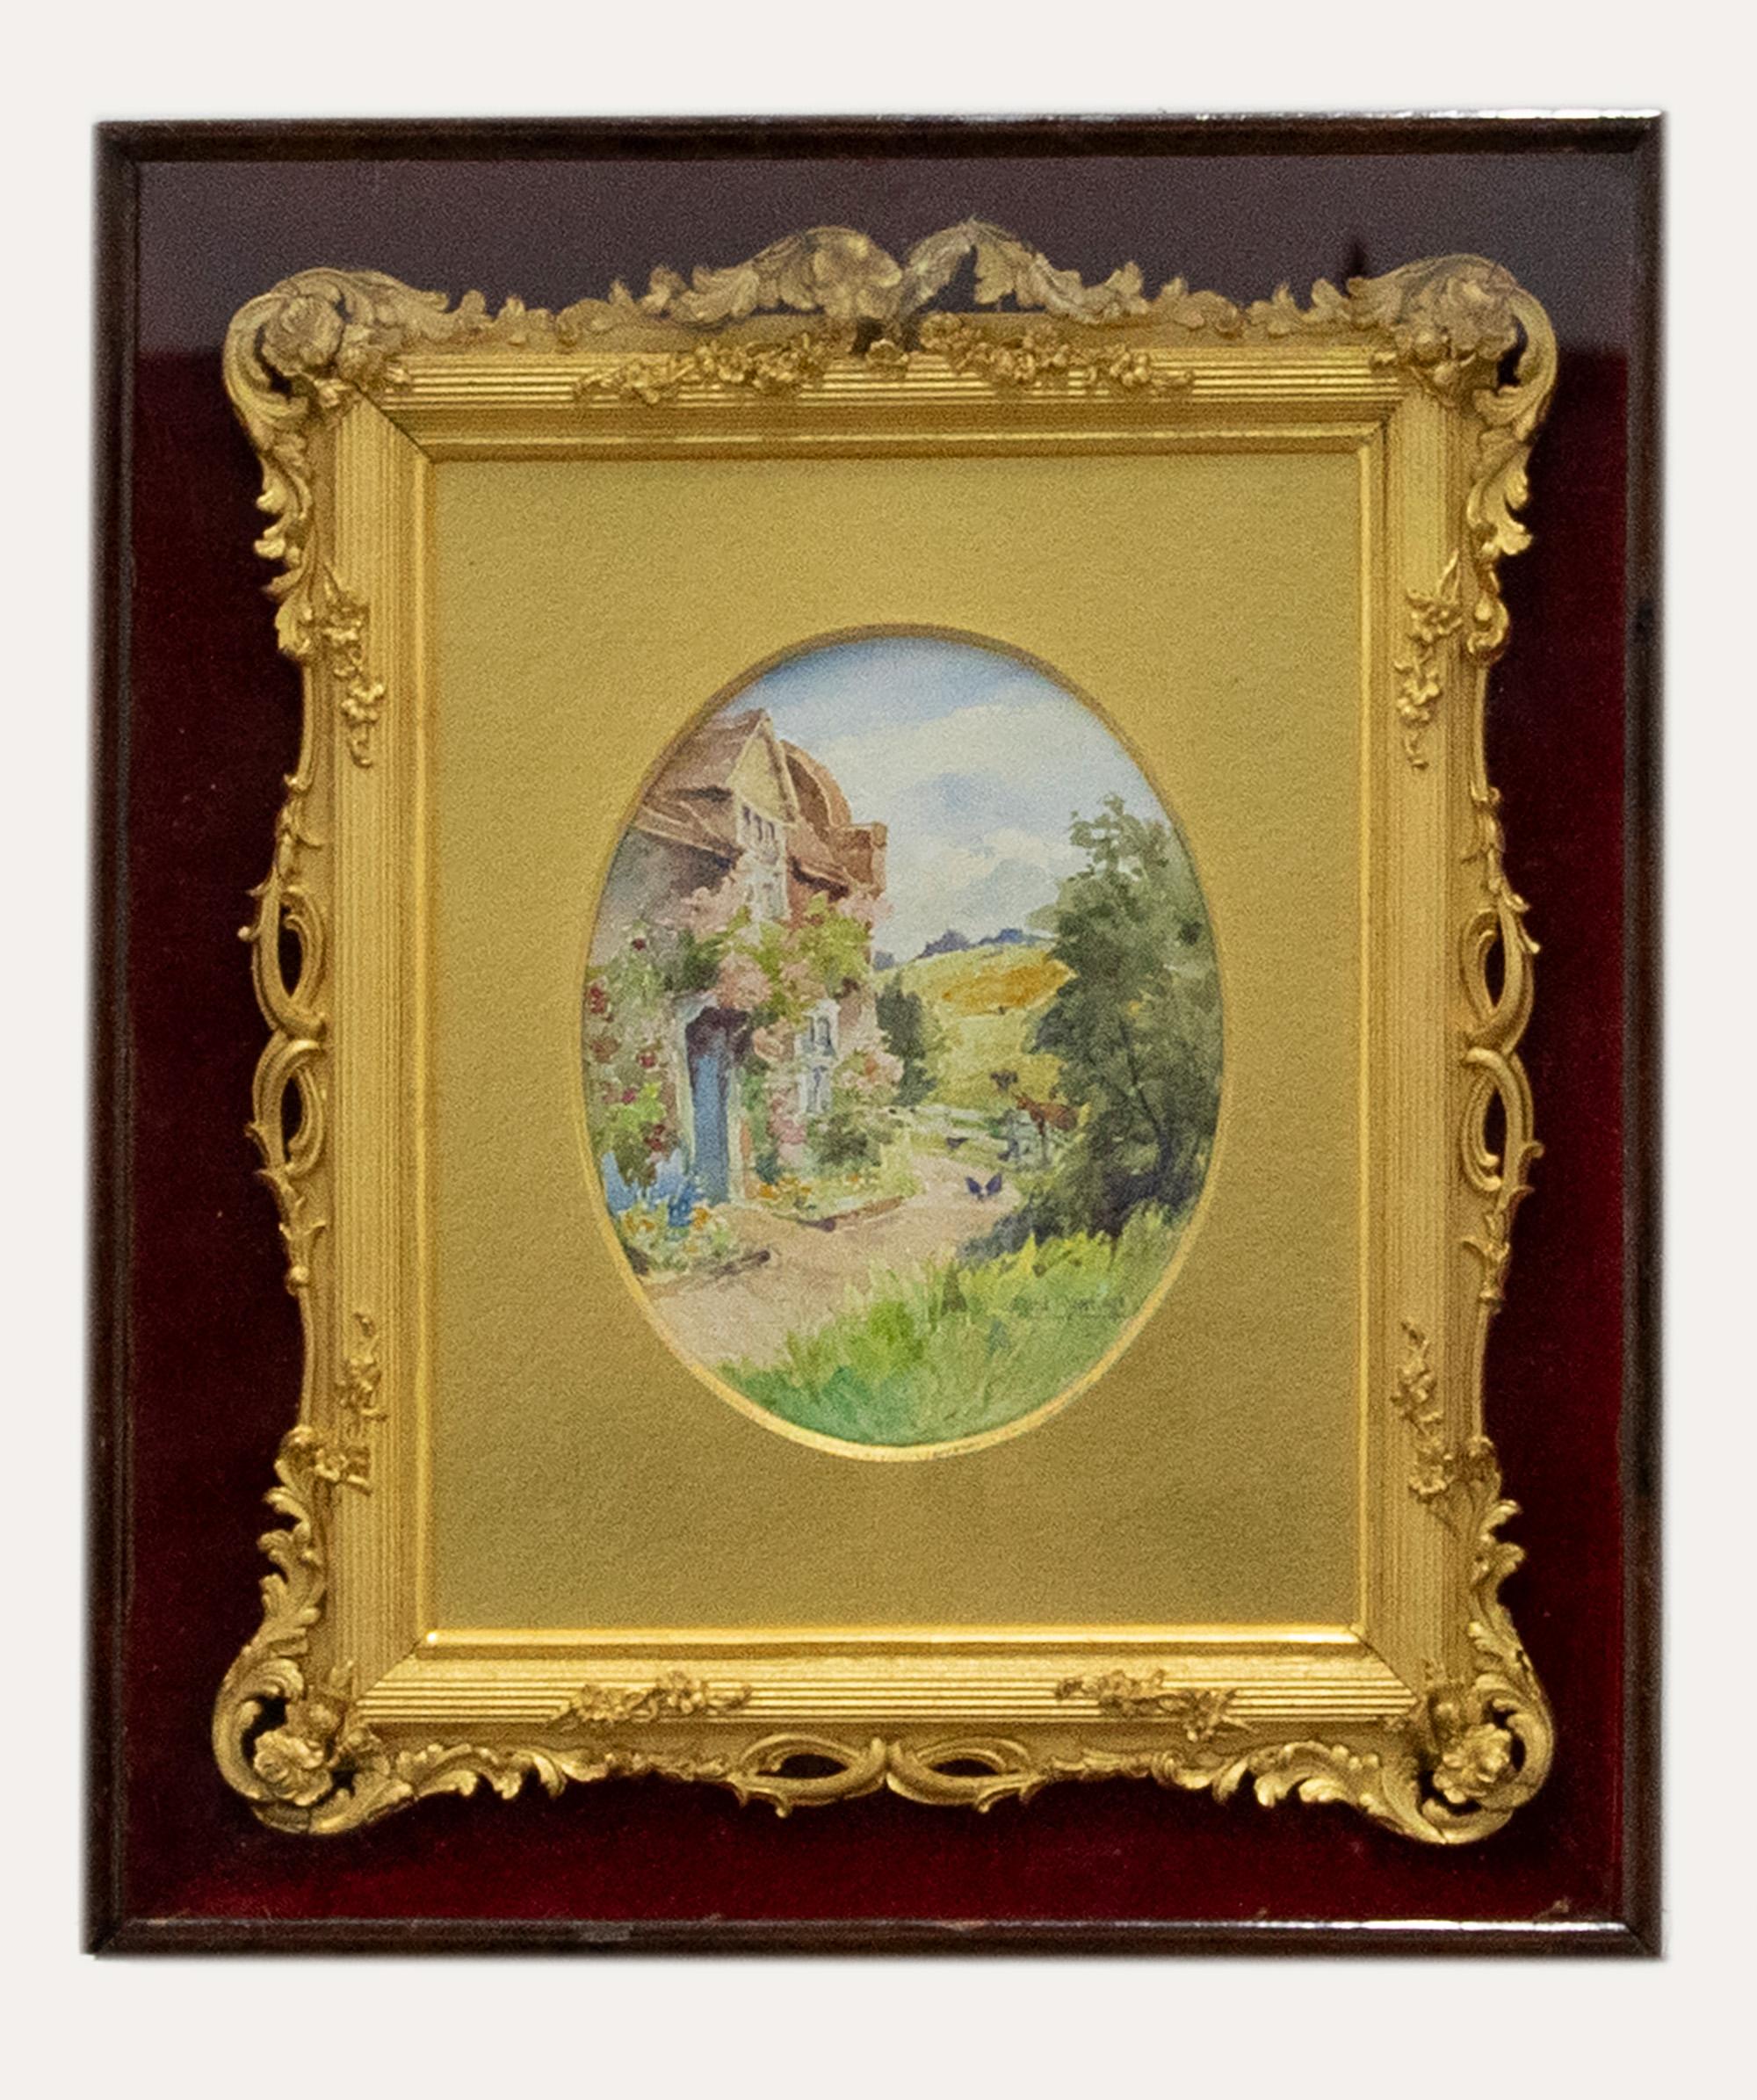 Vergoldeter Bilderrahmen aus dem späten 19. Jahrhundert in einer Mahagonibox – Art von Unknown